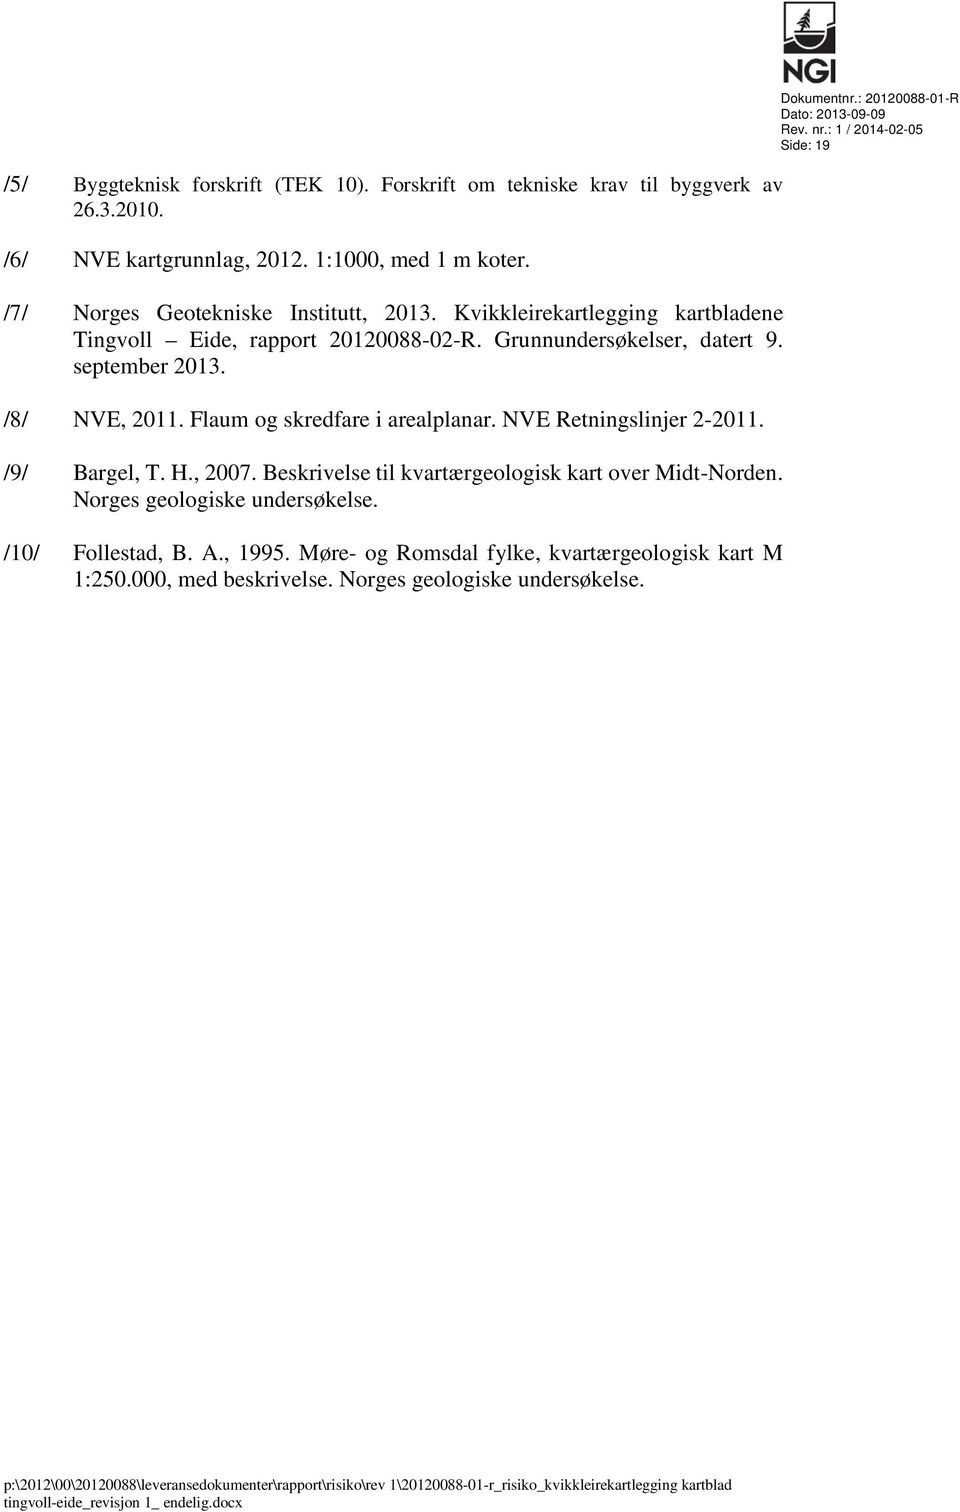 /9/ Bargel, T. H., 2007. Beskrivelse til kvartærgeologisk kart over Midt-Norden. Norges geologiske undersøkelse. /10/ Follestad, B. A., 1995. Møre- og Romsdal fylke, kvartærgeologisk kart M 1:250.